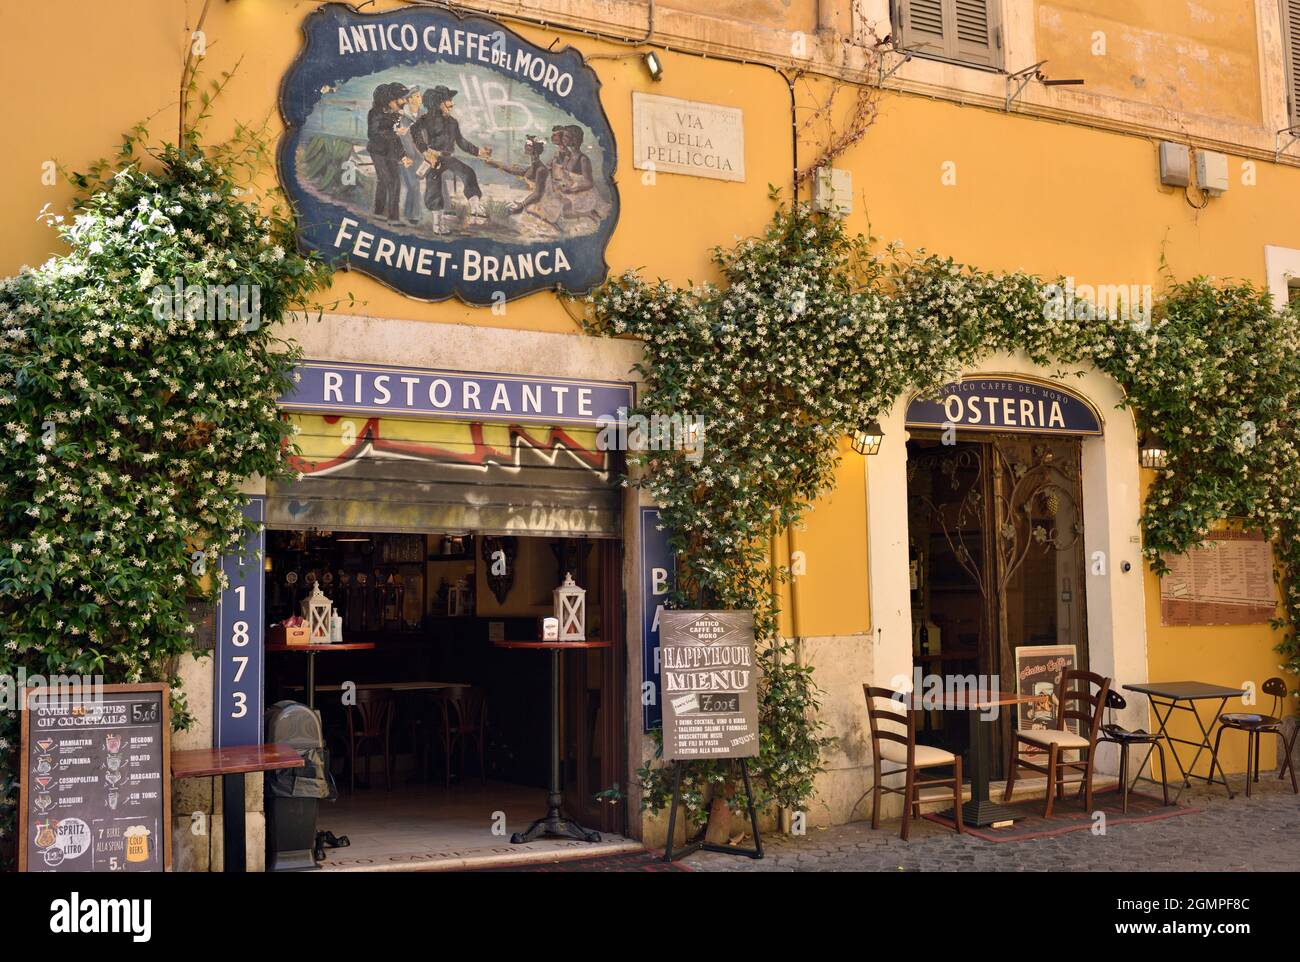 Italy, Rome, Trastevere, Antico Caffè del Moro Stock Photo